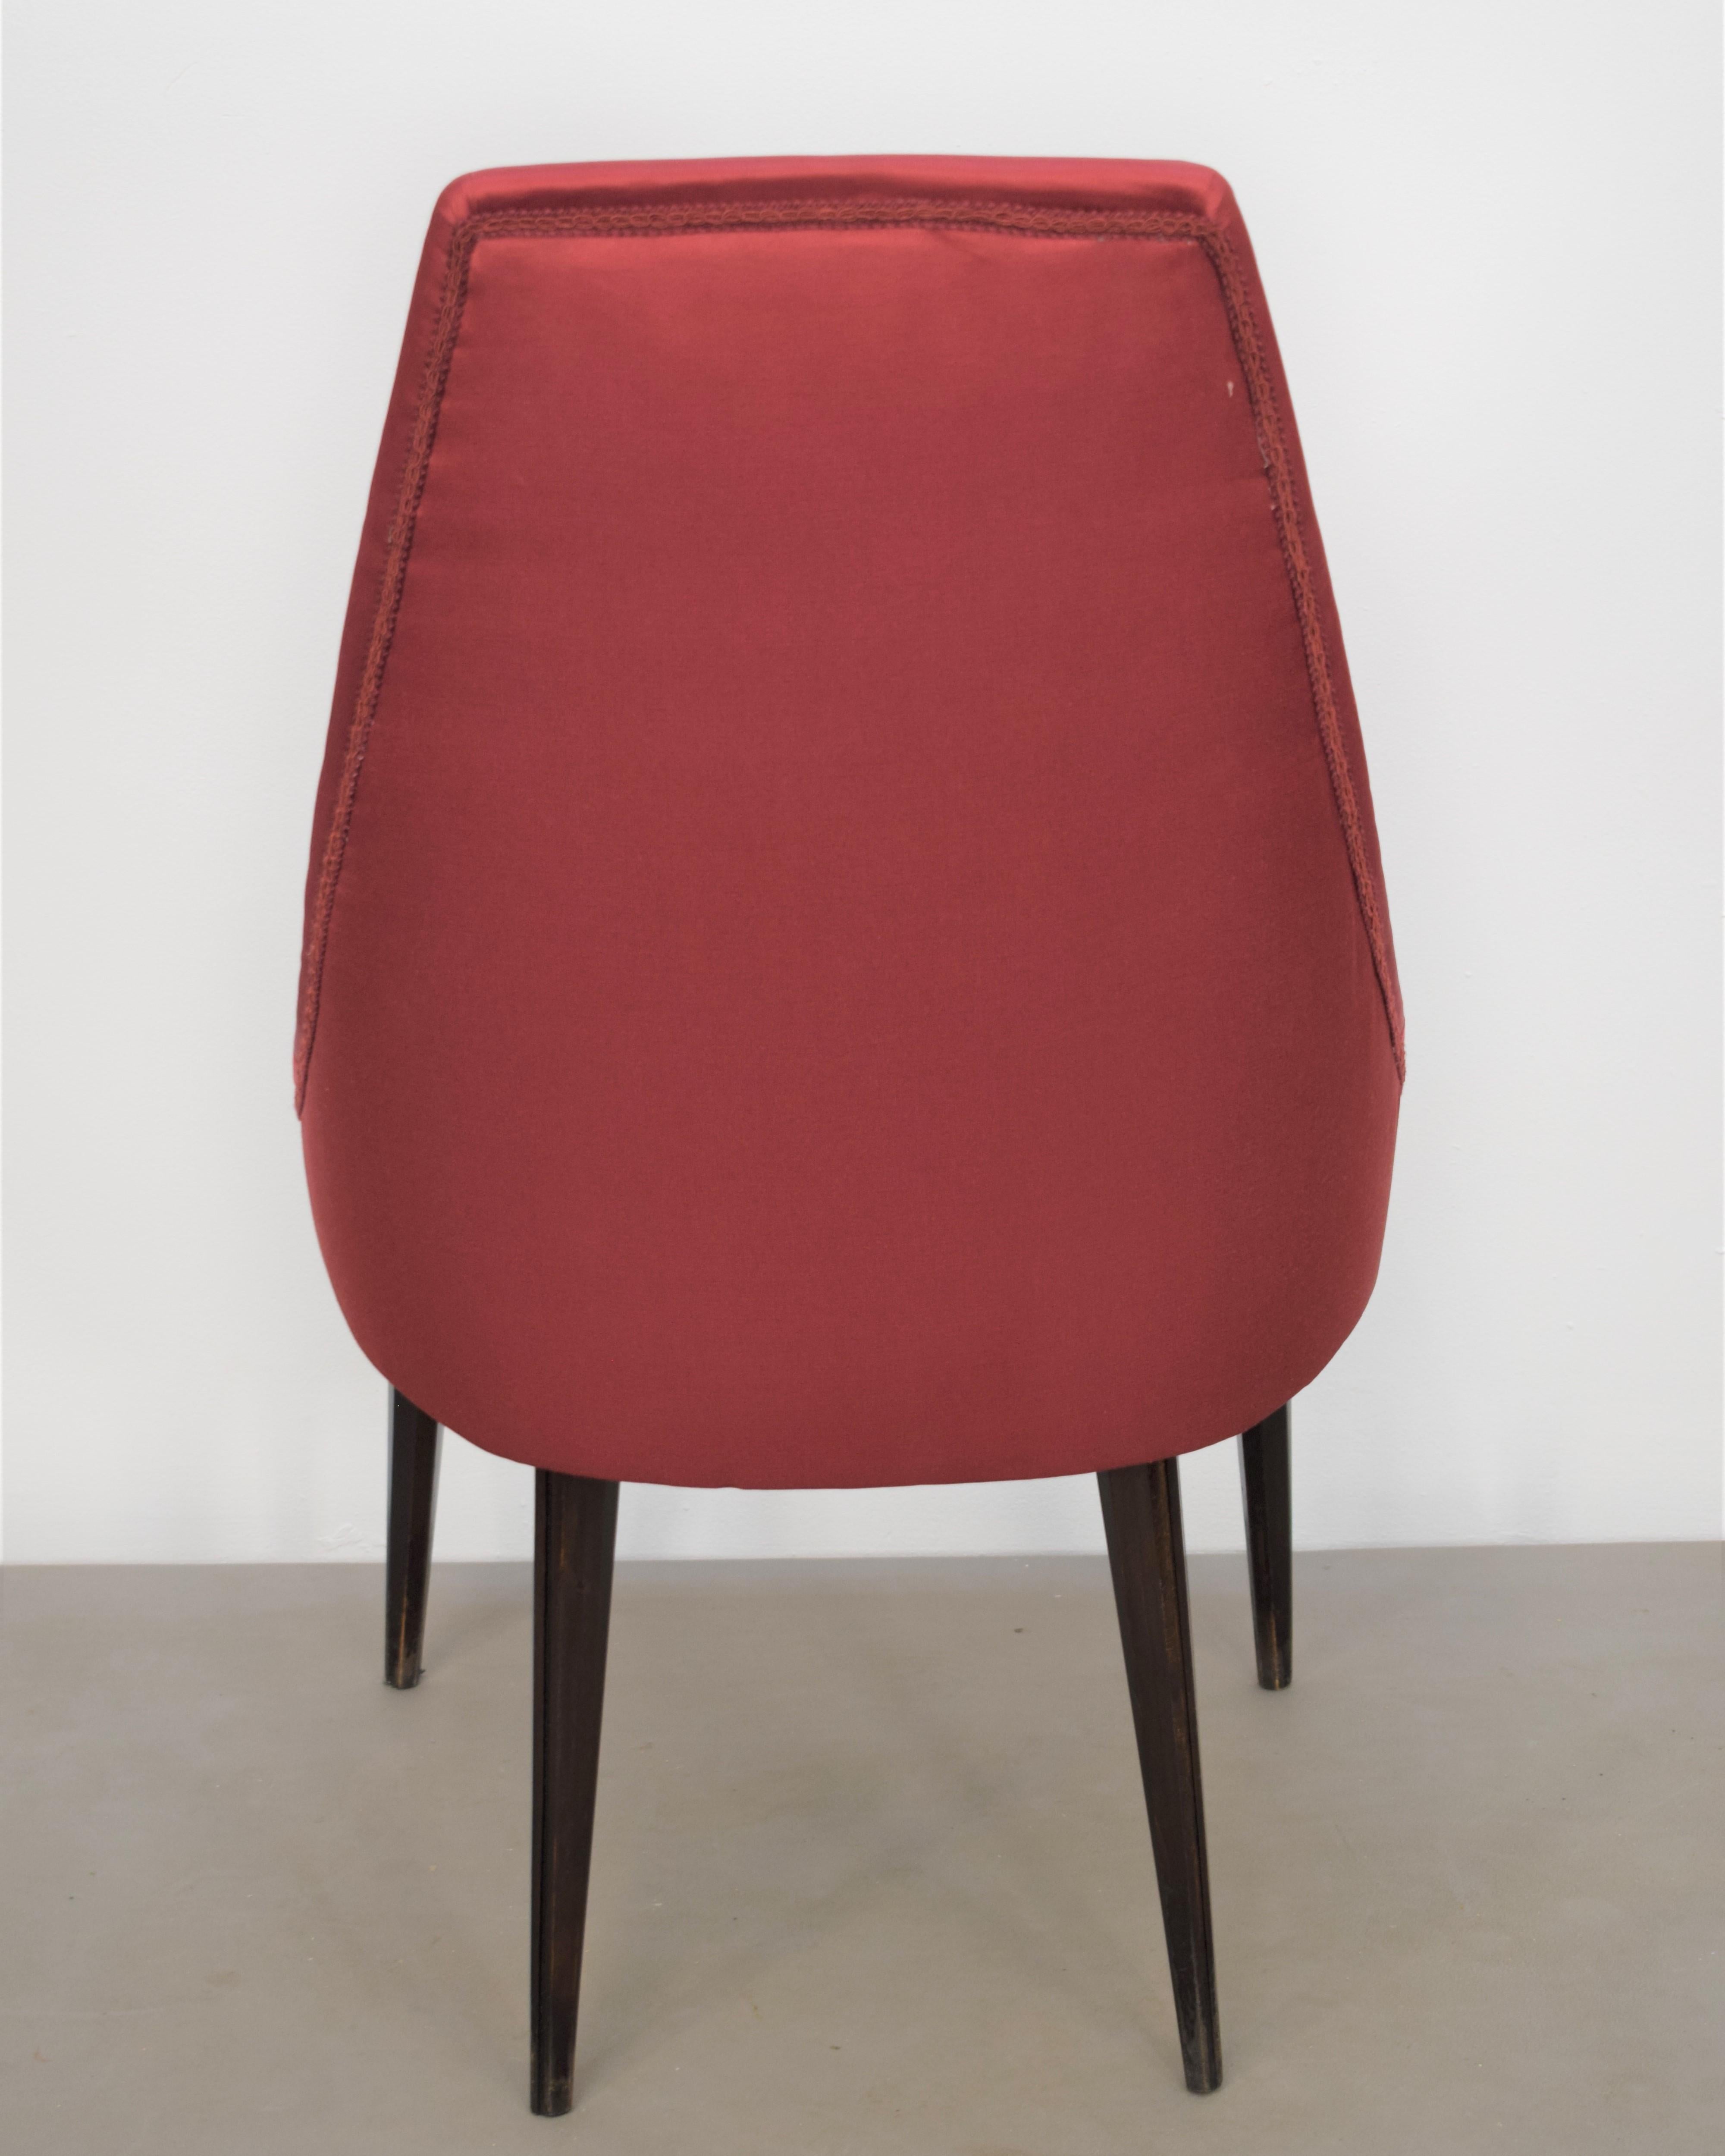 Set of 3 Italian Chairs, Osvaldo Borsani Style, 1960s For Sale 9